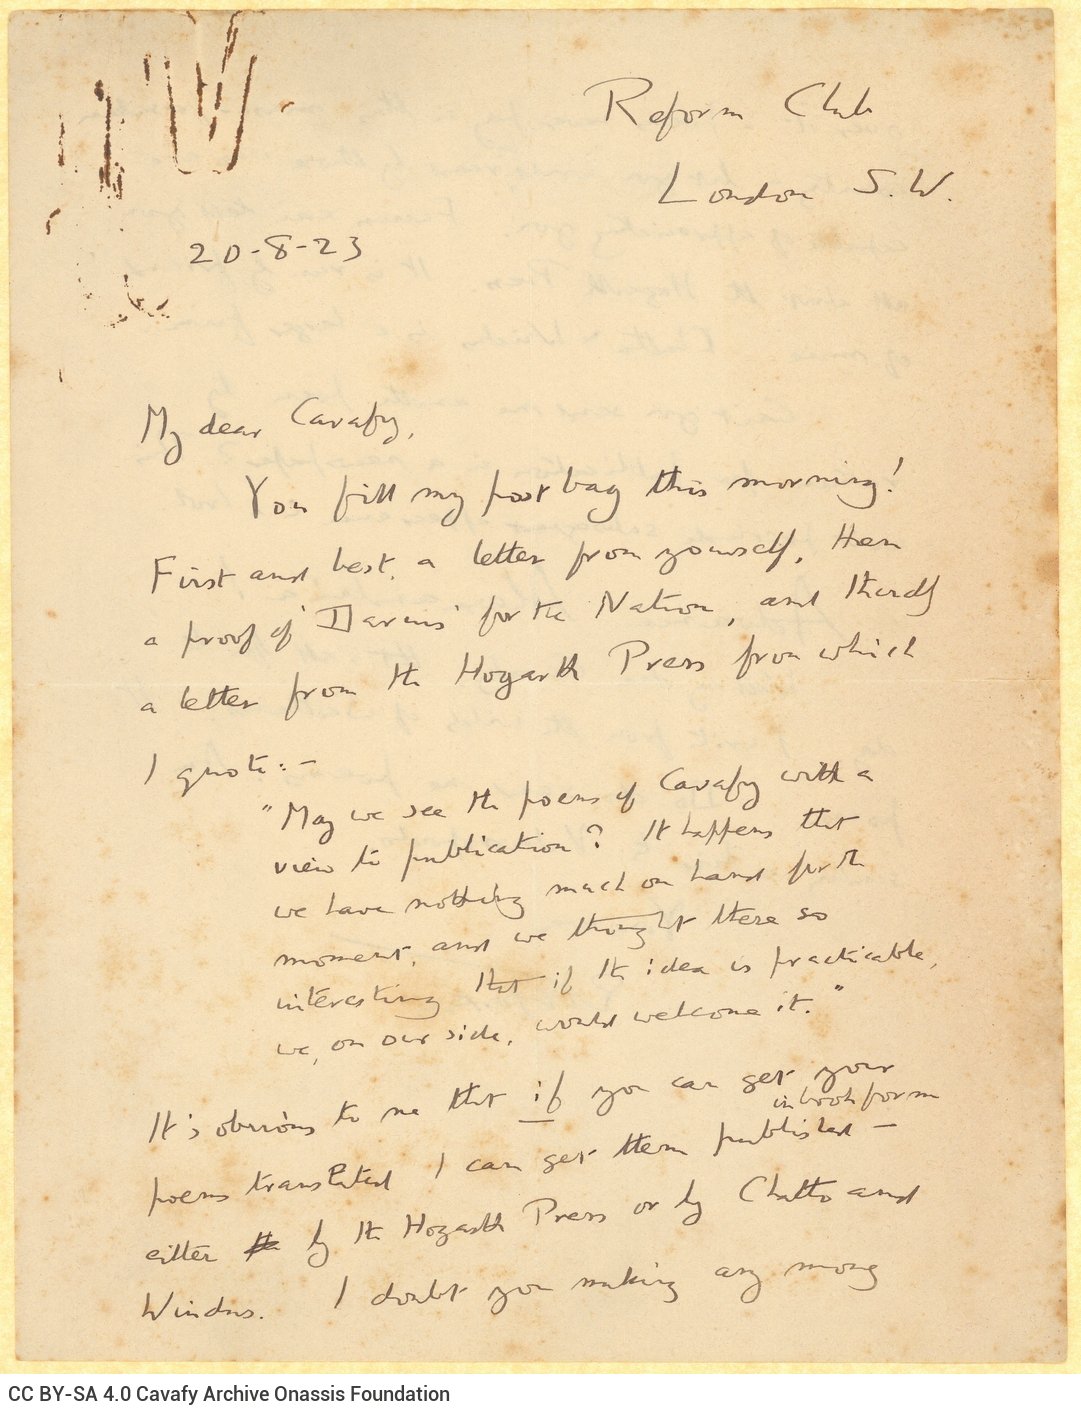 Χειρόγραφη επιστολή του Ε. Μ. Φόρστερ (E. M. Forster) προς τον Καβάφη, στις δ